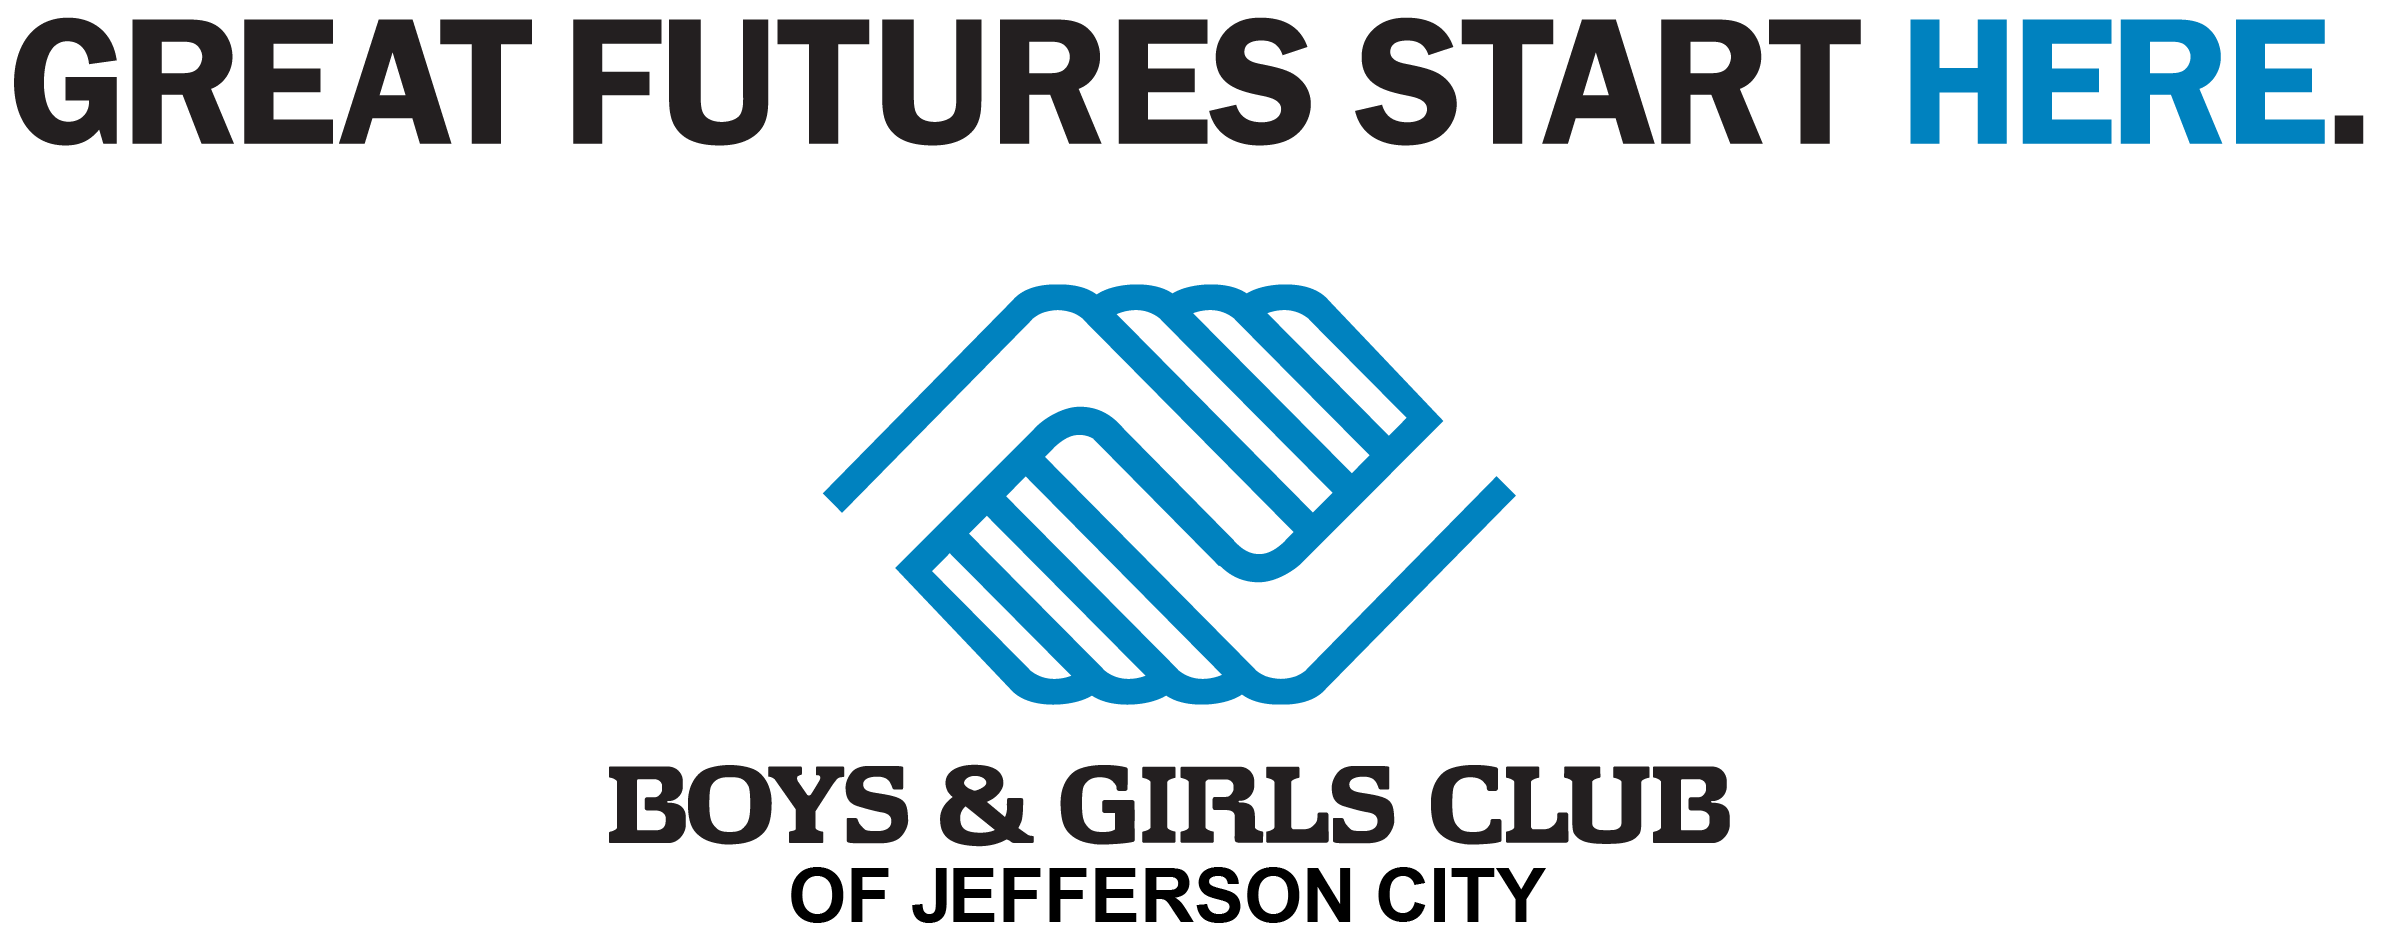 Boys & Girls Club of Jefferson City logo